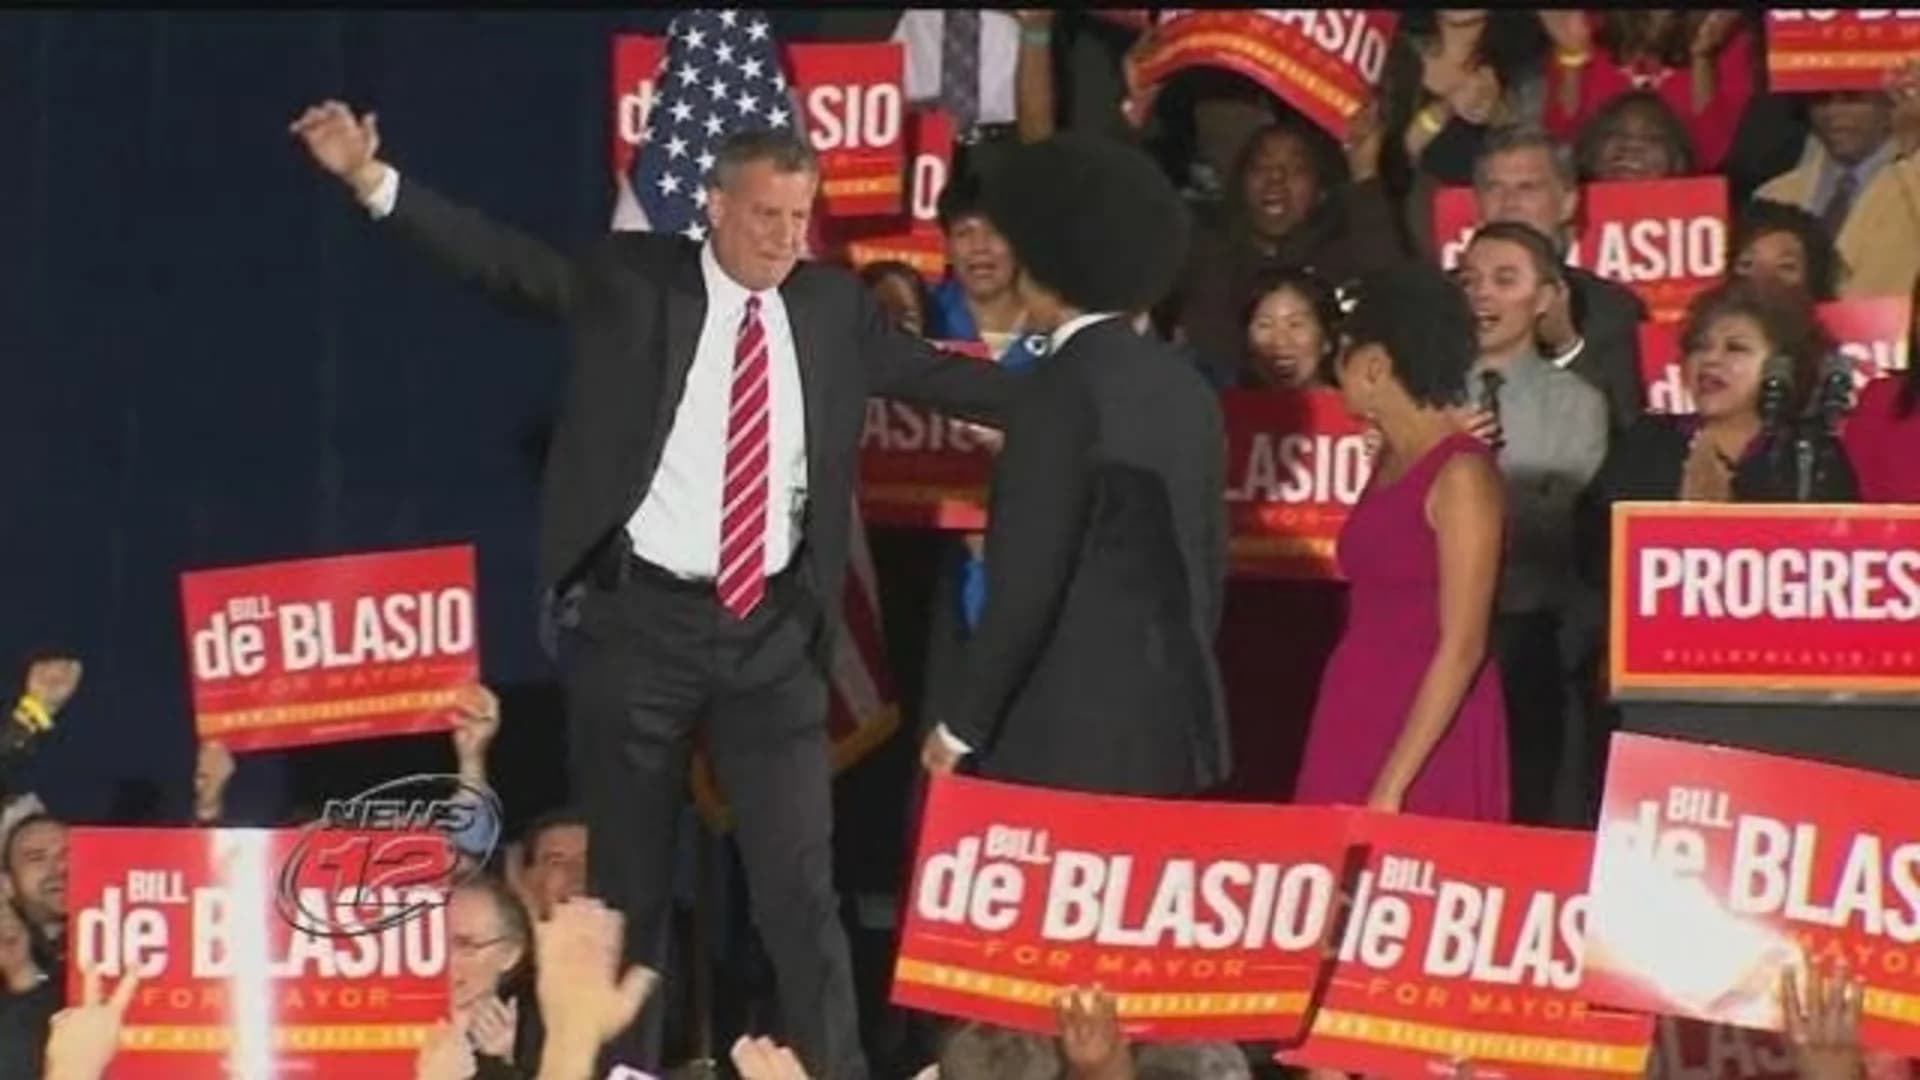 De Blasio tells Iowans he's considering a presidential run